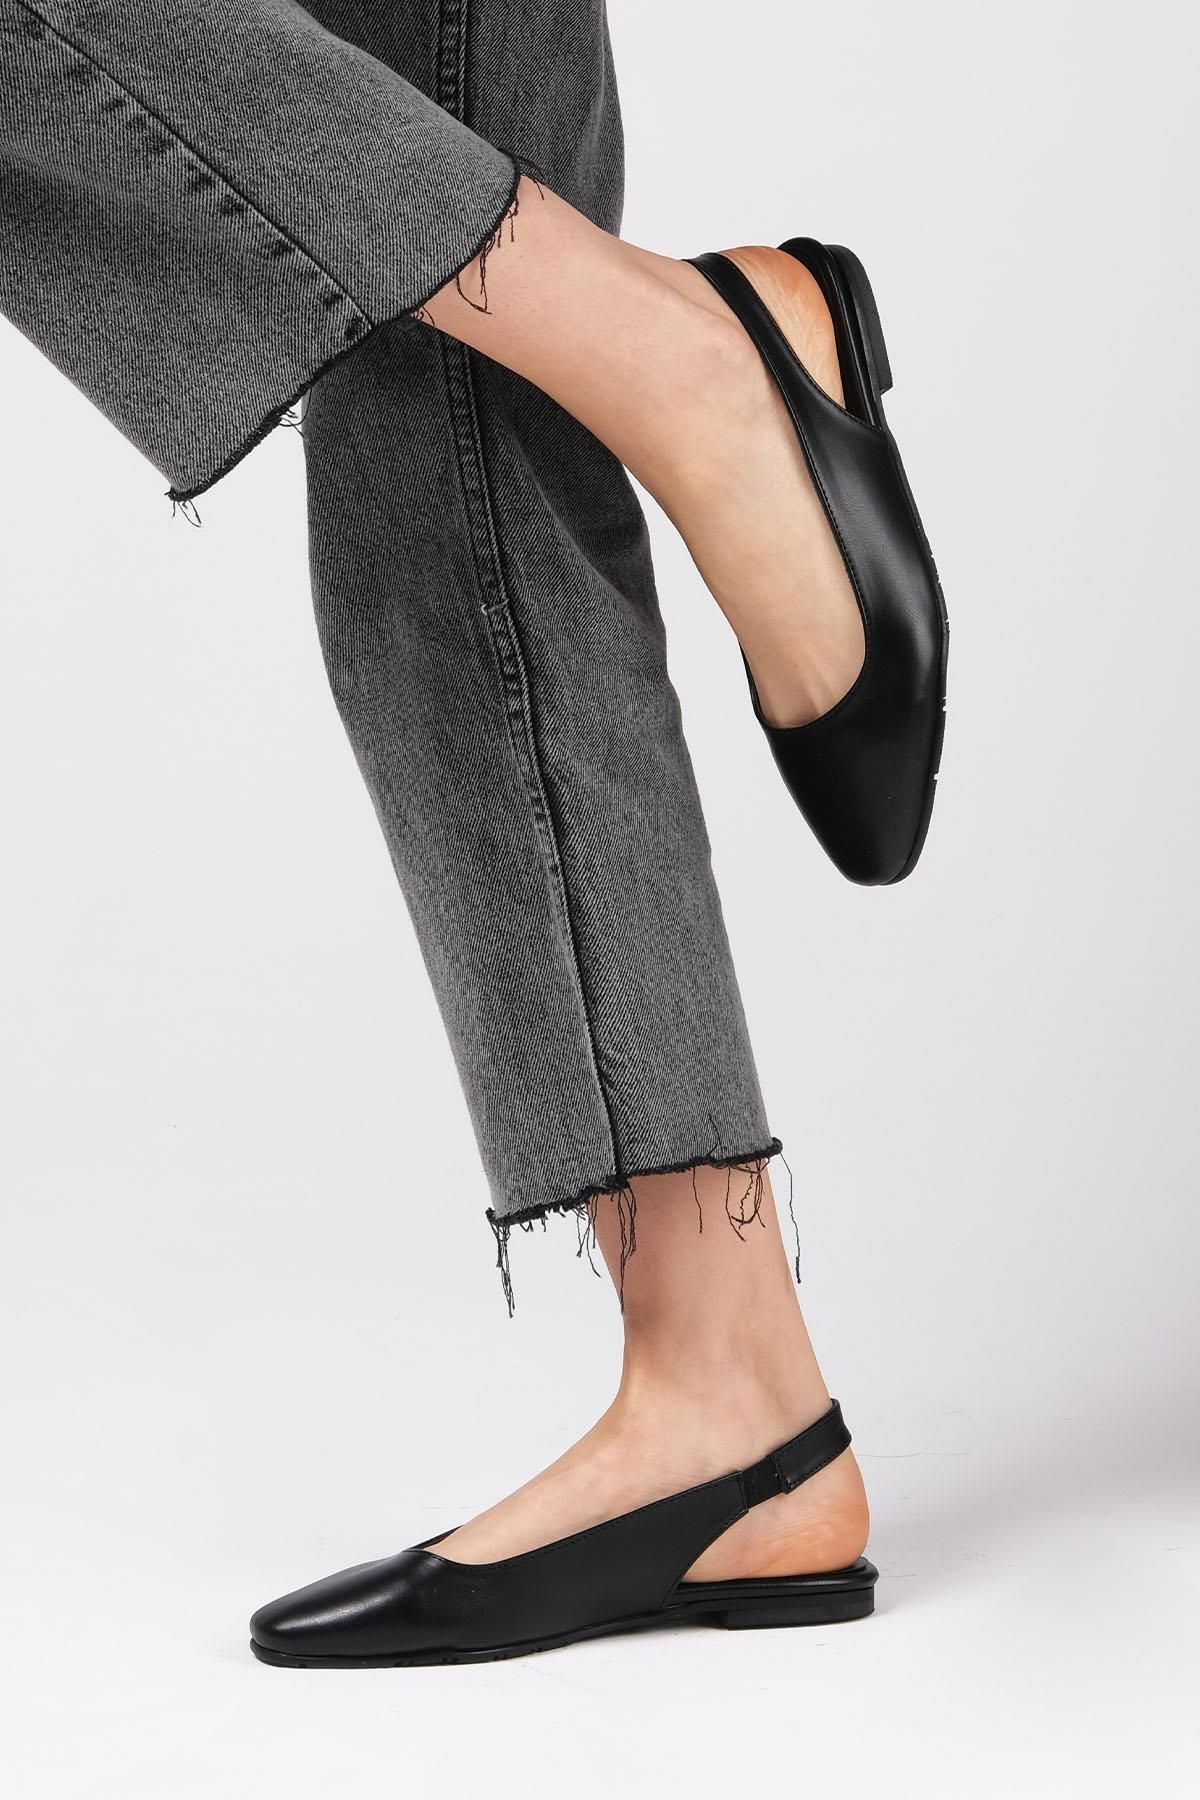 Mio Gusto Ally Siyah Renk Arkası Açık Kadın Düz Babet Ayakkabı